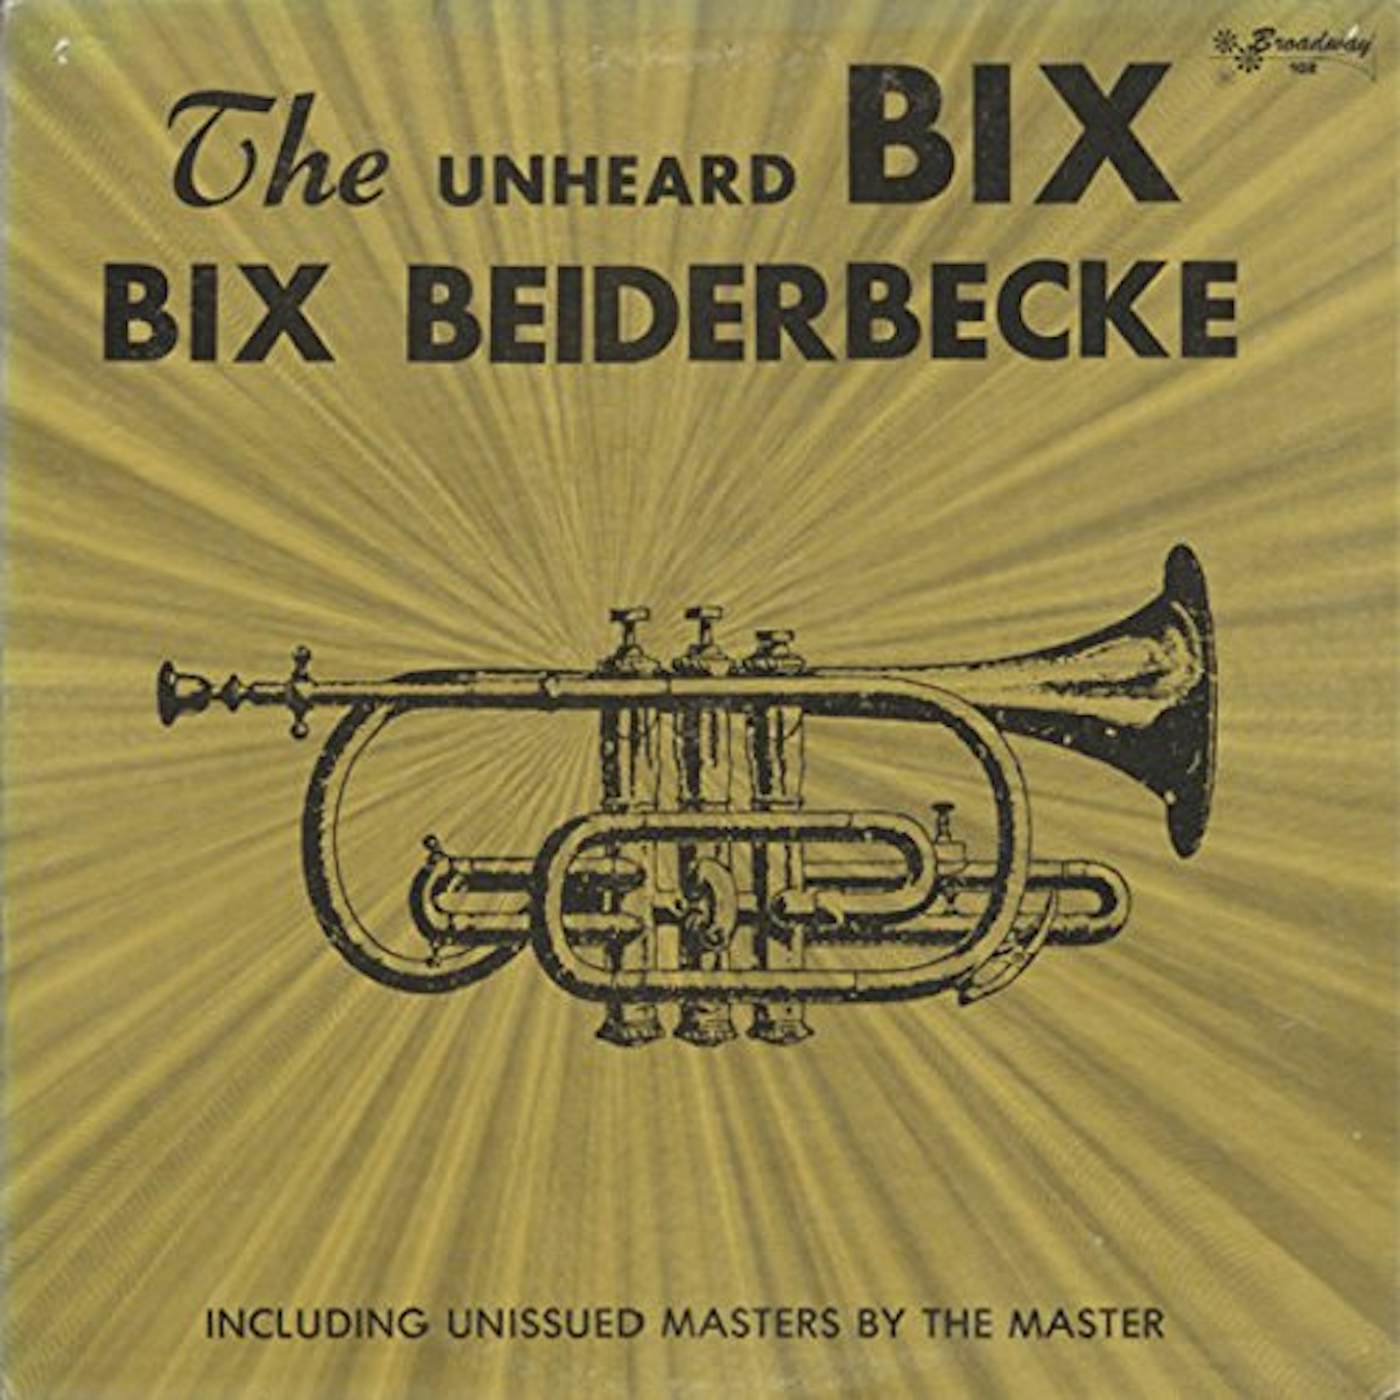 Bix Beiderbecke UNHEARD BIX Vinyl Record